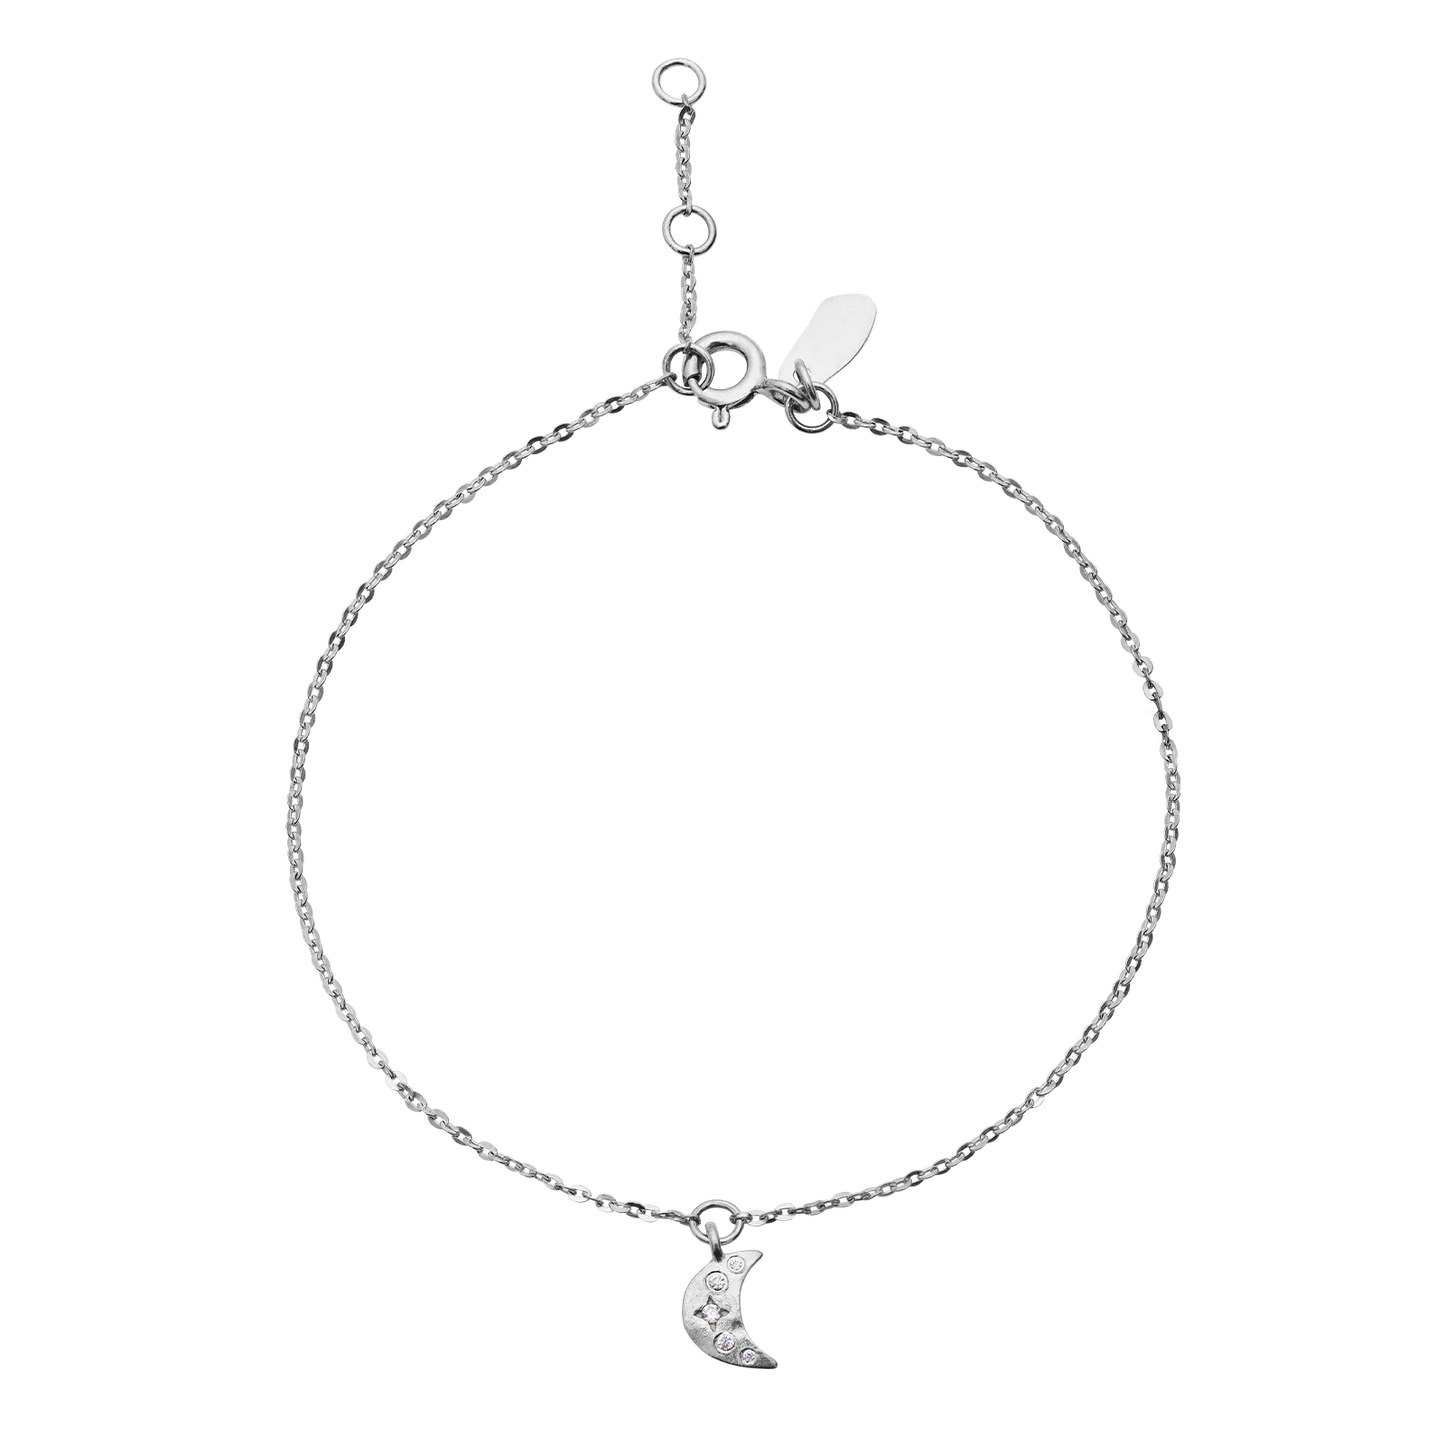 Sølvarmbåndet Celestia i fra Maanesten, er et enkelt armbånd med en måne som anheng.